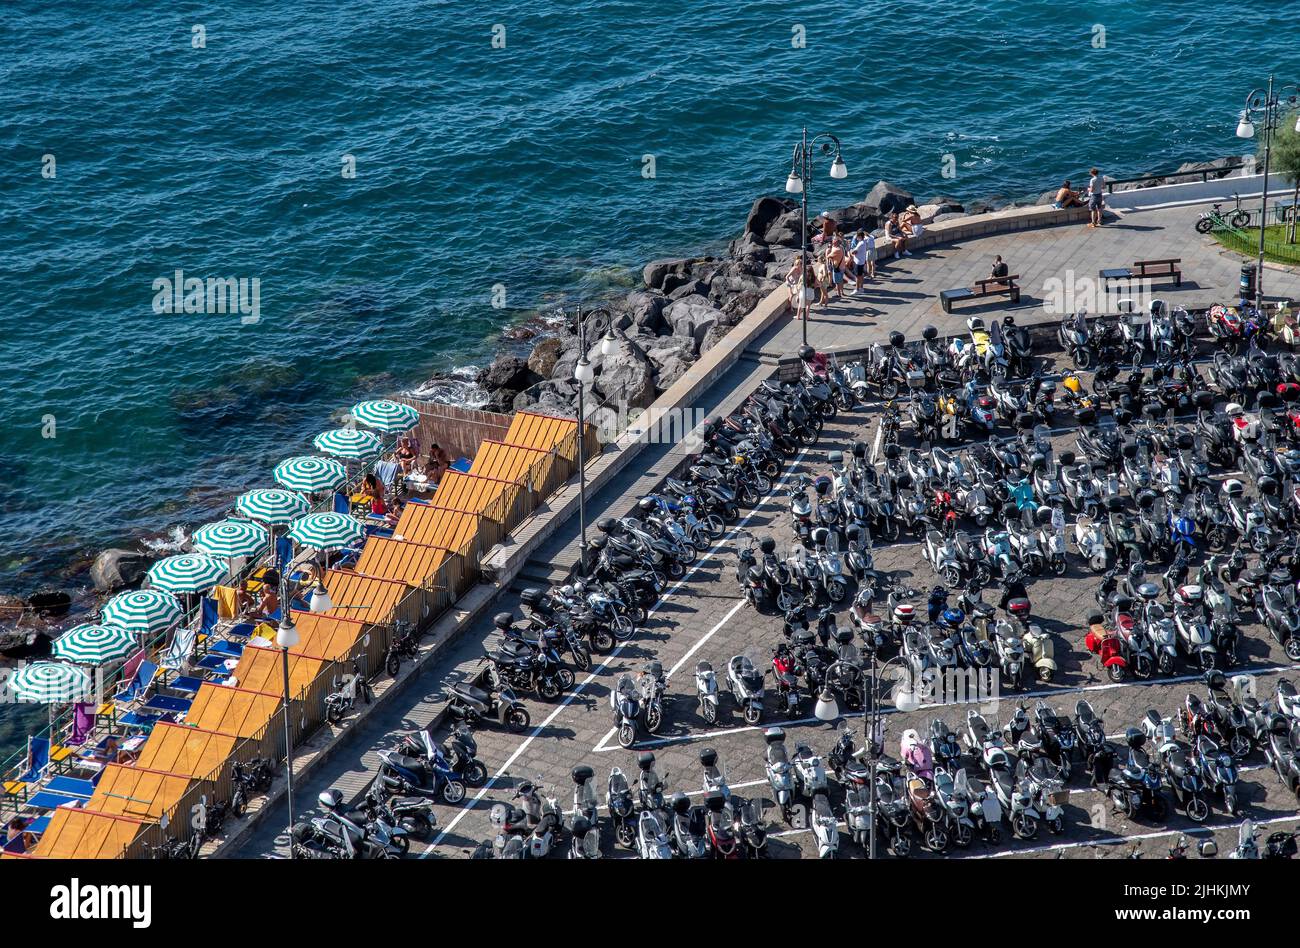 Vistas de las motos y scooters estacionadas en la ciudad costera de Sorrento en el suroeste de Italia, frente a la Bahía de Nápoles en la Península Sorrentina. Italia. Foto de stock